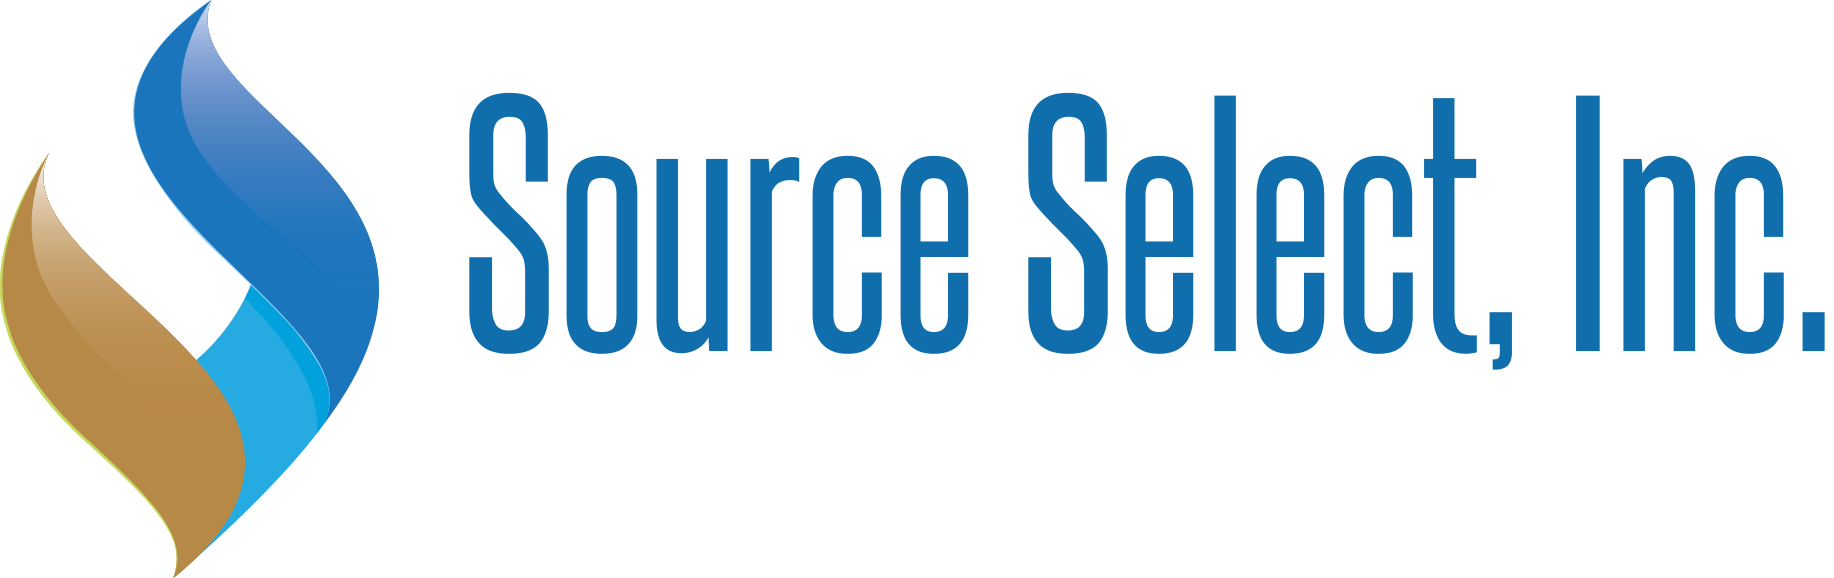 Source Select, Inc